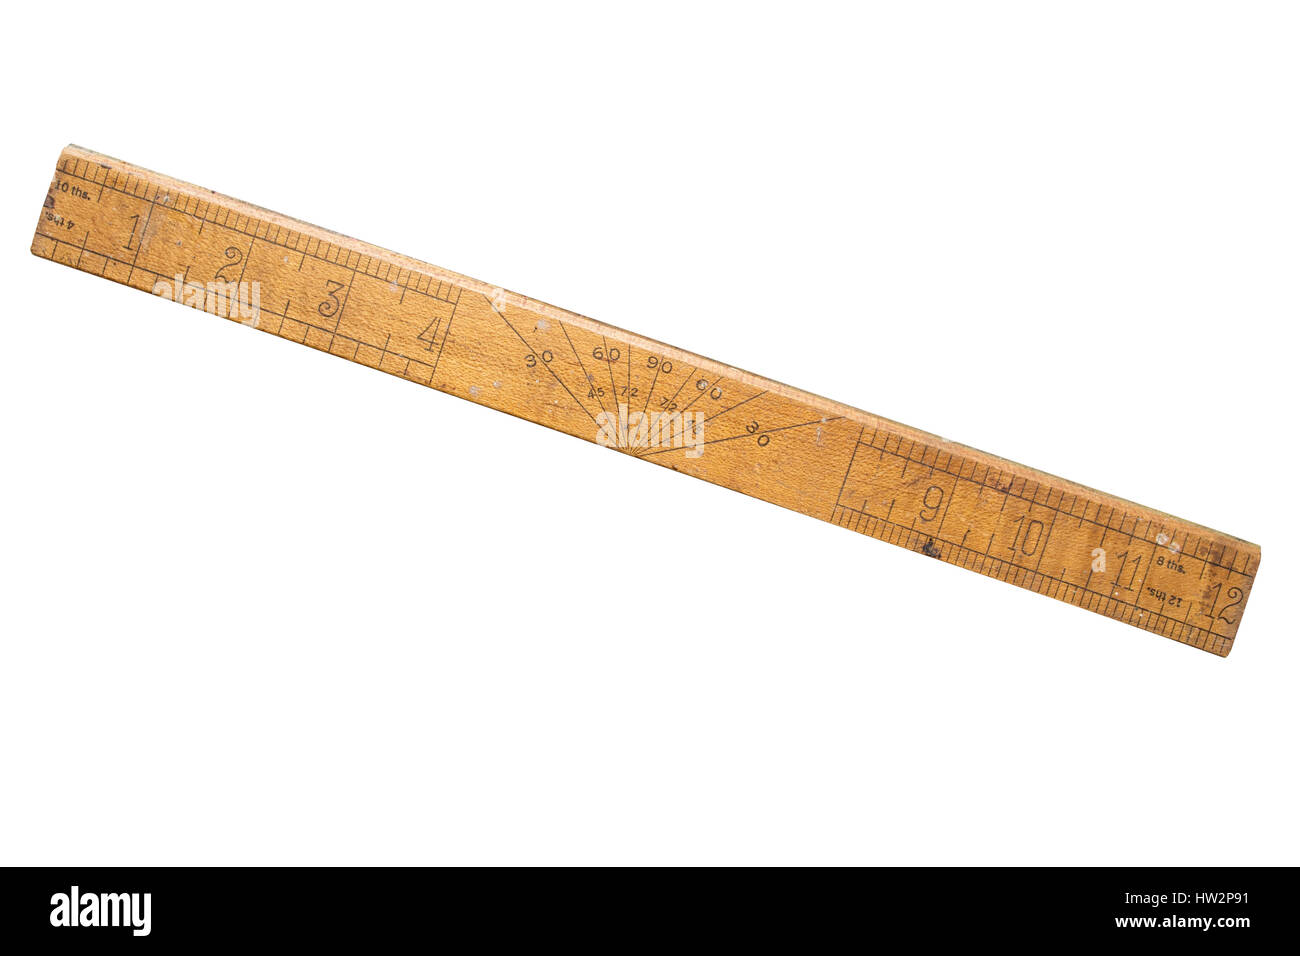 old-school-rulerrule-foot-long-showing-angle-degrees-HW2P91.jpg